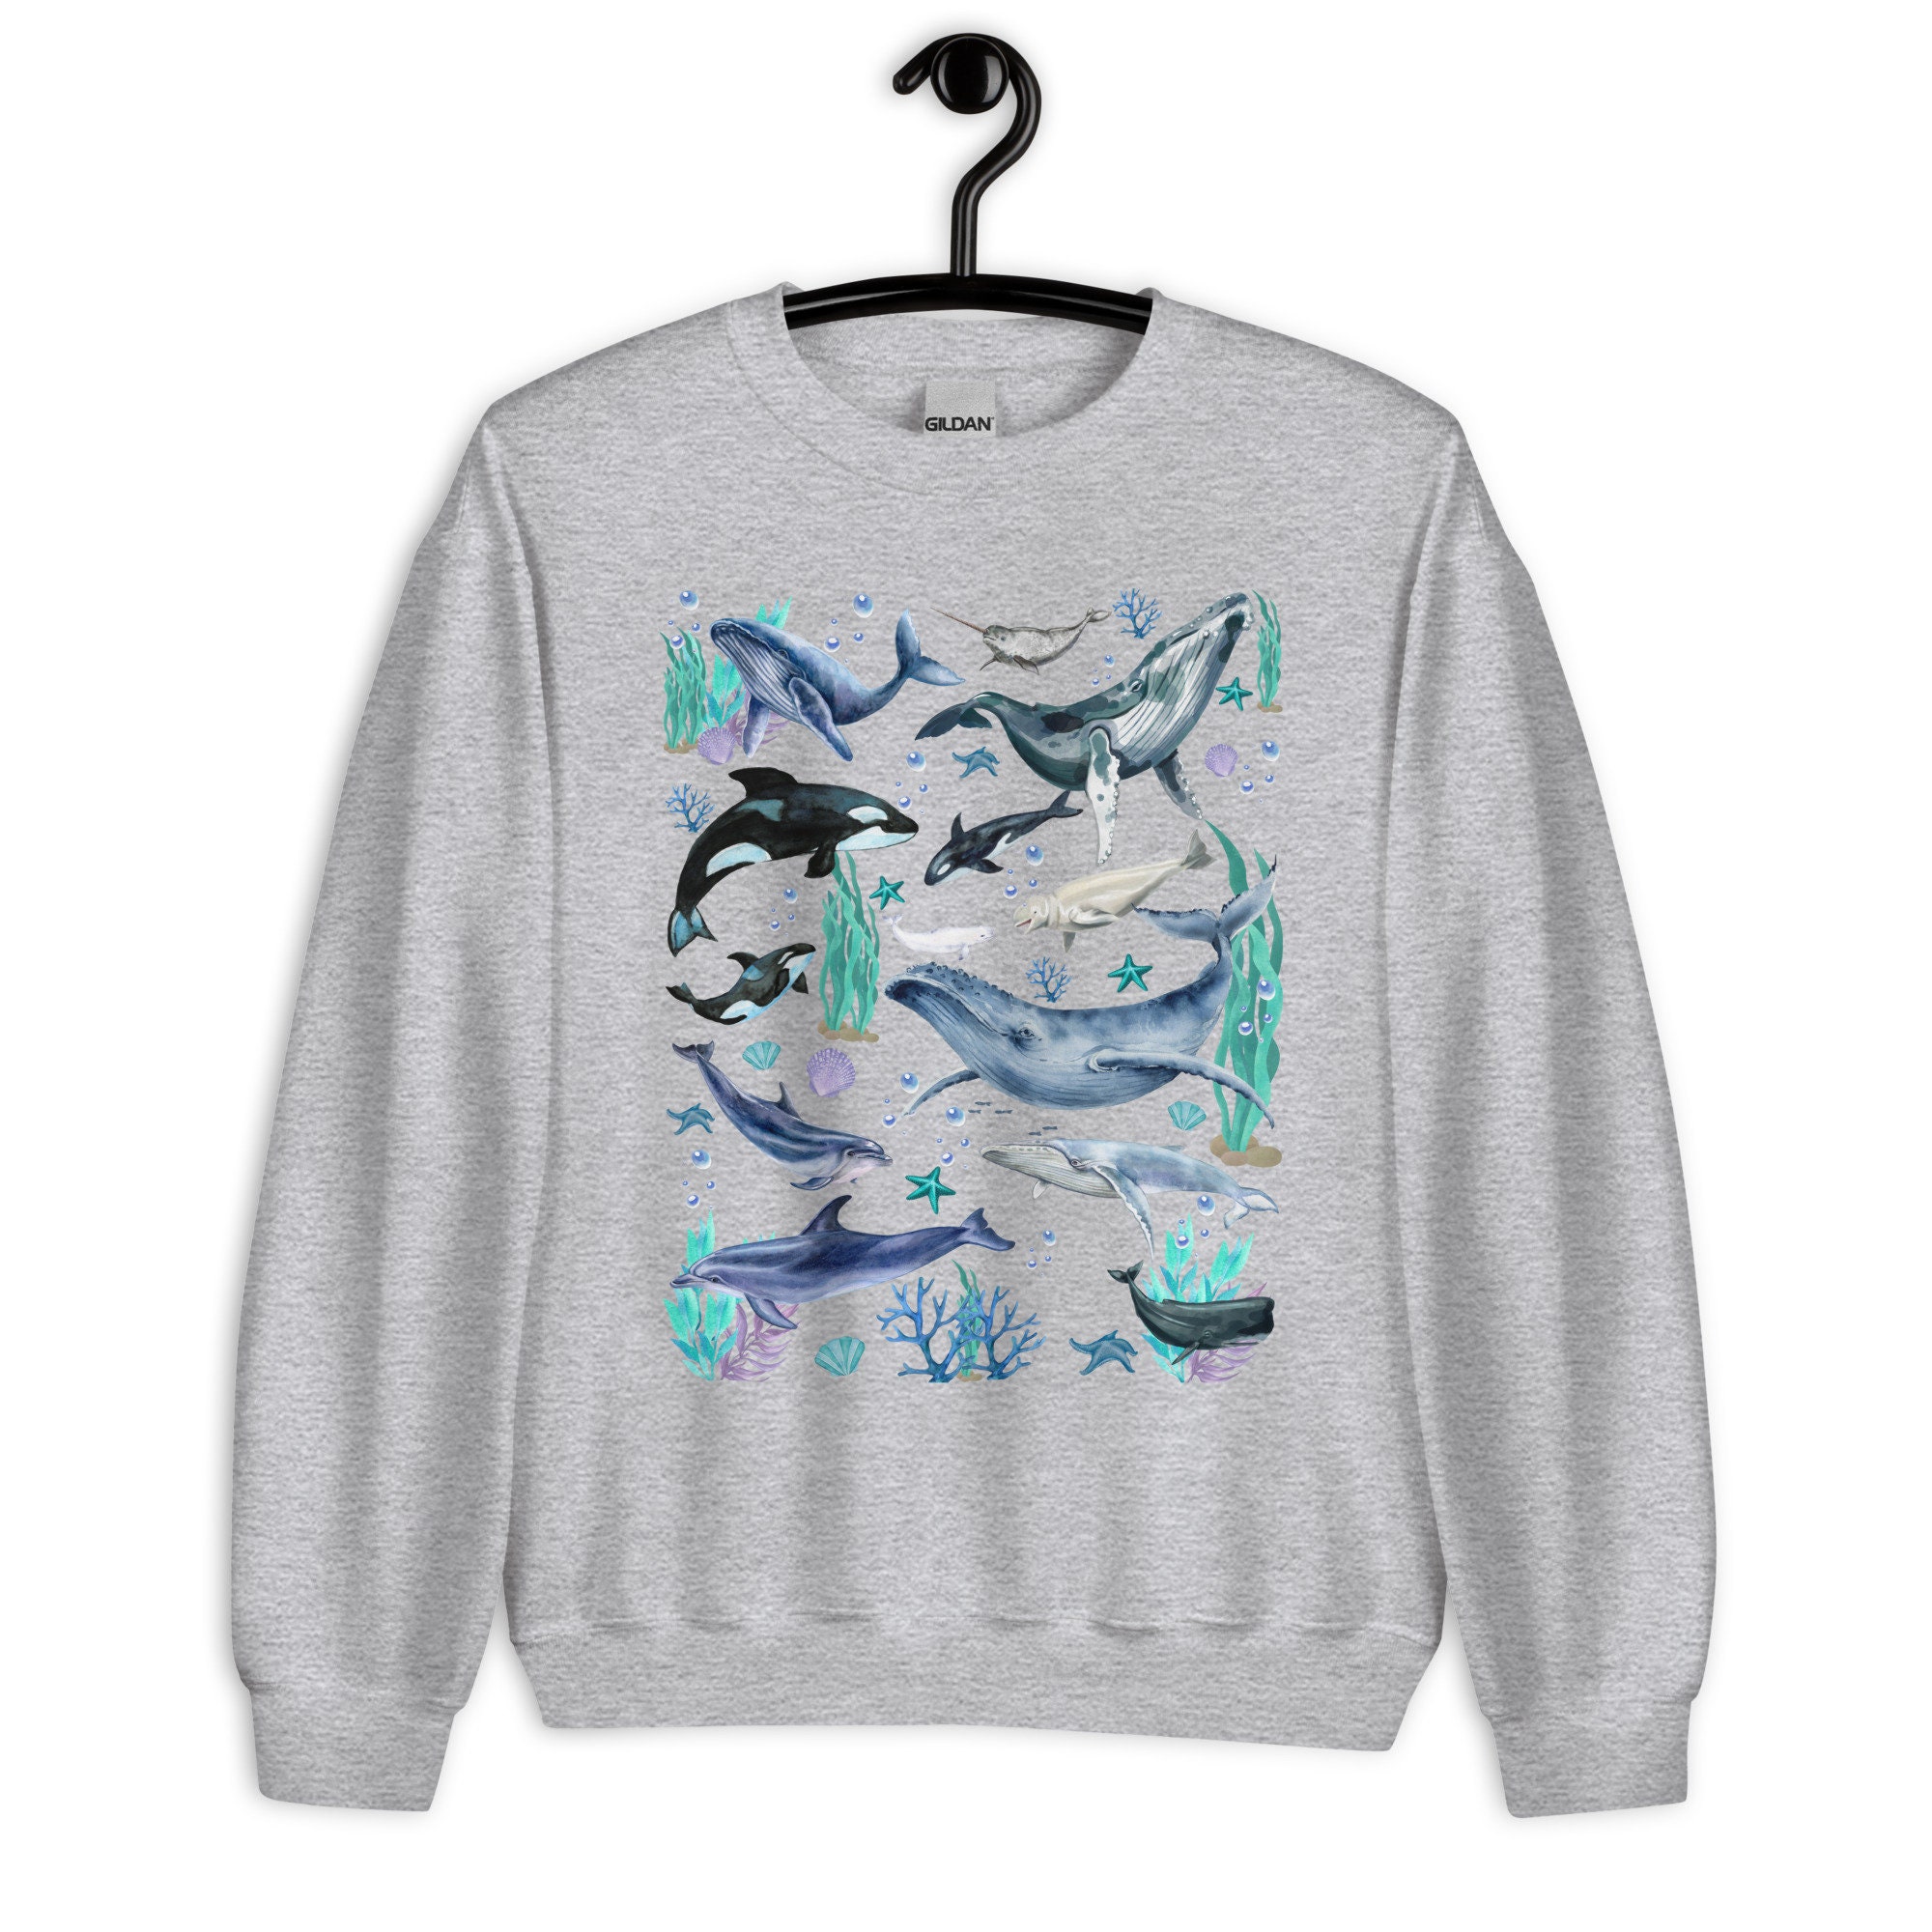 Watercolor Whale Sweatshirt 90s Clothing Trendy Ocean 